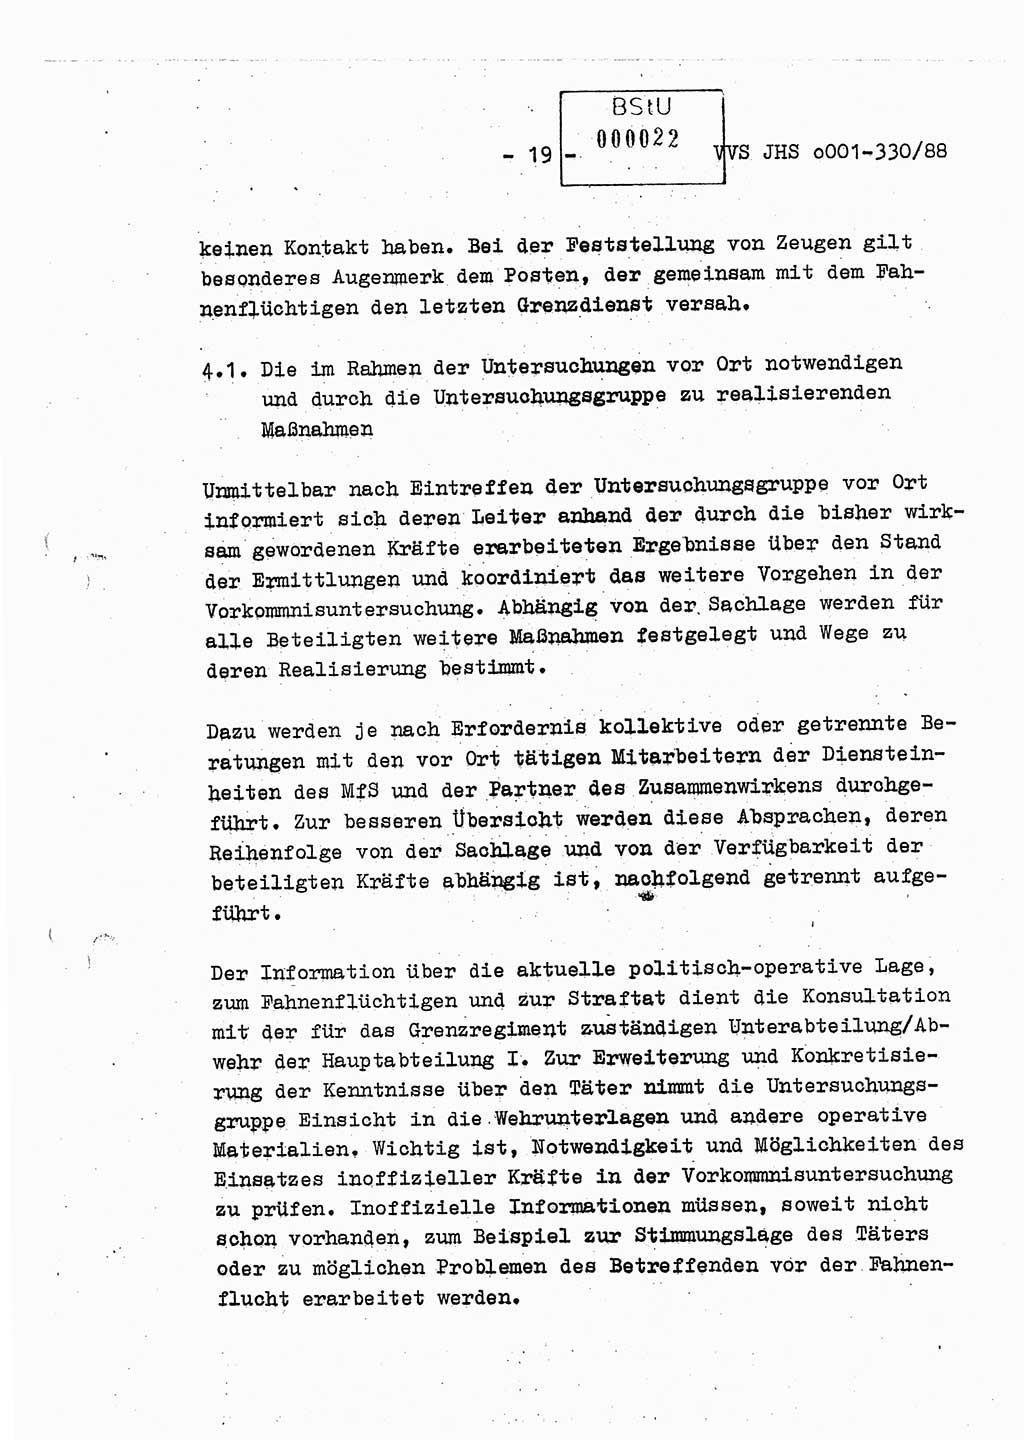 Diplomarbeit Offiziersschüler Thomas Mühle (HA Ⅸ/6), Ministerium für Staatssicherheit (MfS) [Deutsche Demokratische Republik (DDR)], Juristische Hochschule (JHS), Vertrauliche Verschlußsache (VVS) o001-330/88, Potsdam 1988, Seite 19 (Dipl.-Arb. MfS DDR JHS VVS o001-330/88 1988, S. 19)